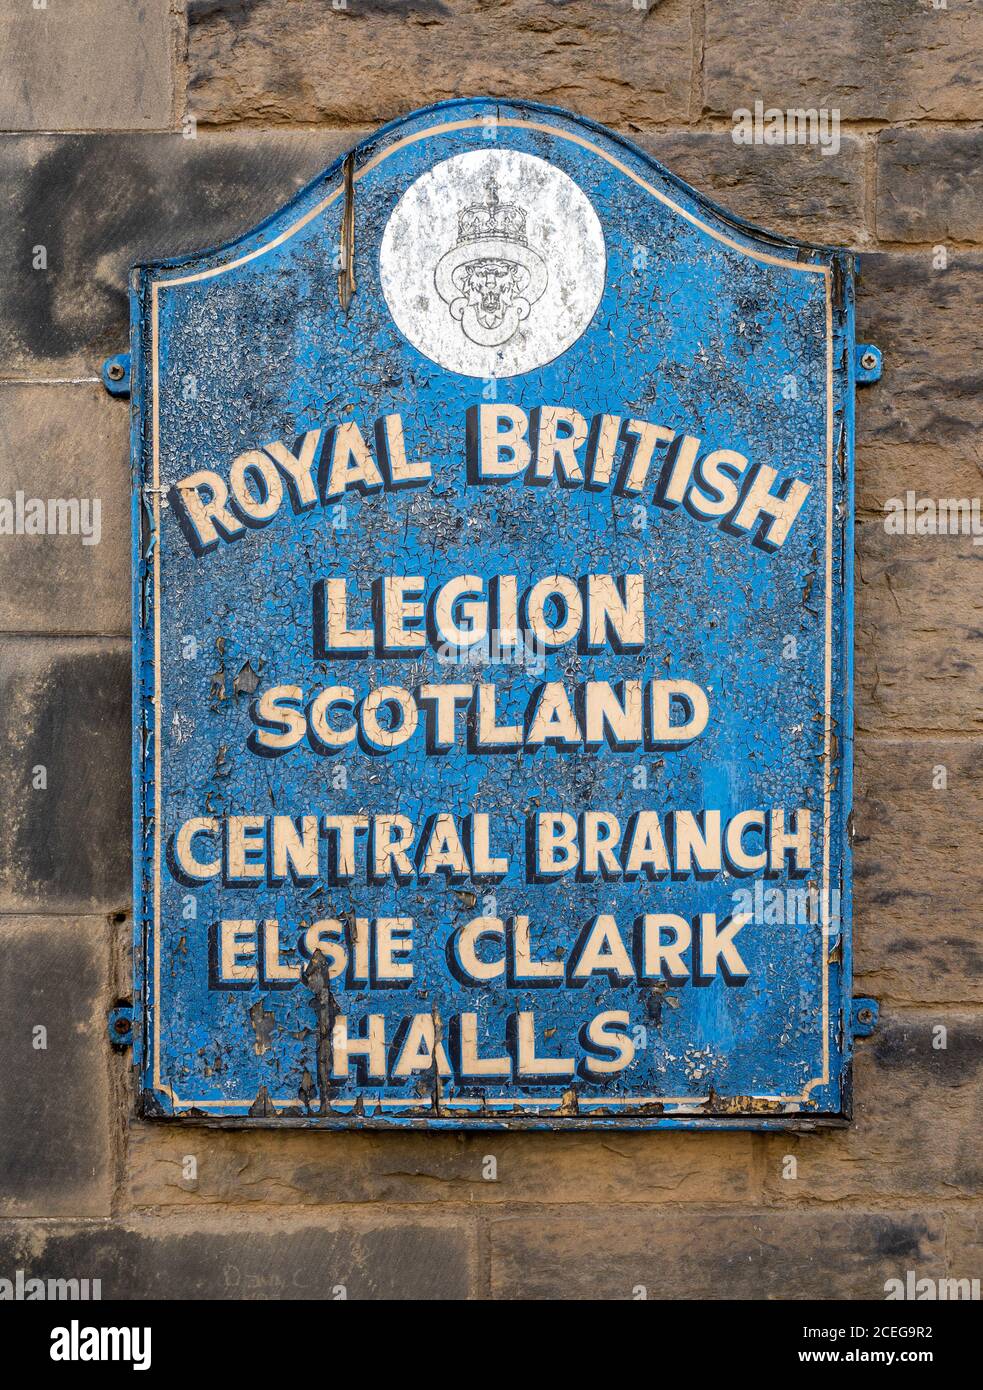 Cartello per Royal British Legion Scotland, Central Branch, Elsie Clark Halls, Edimburgo, Scozia, Regno Unito. Foto Stock